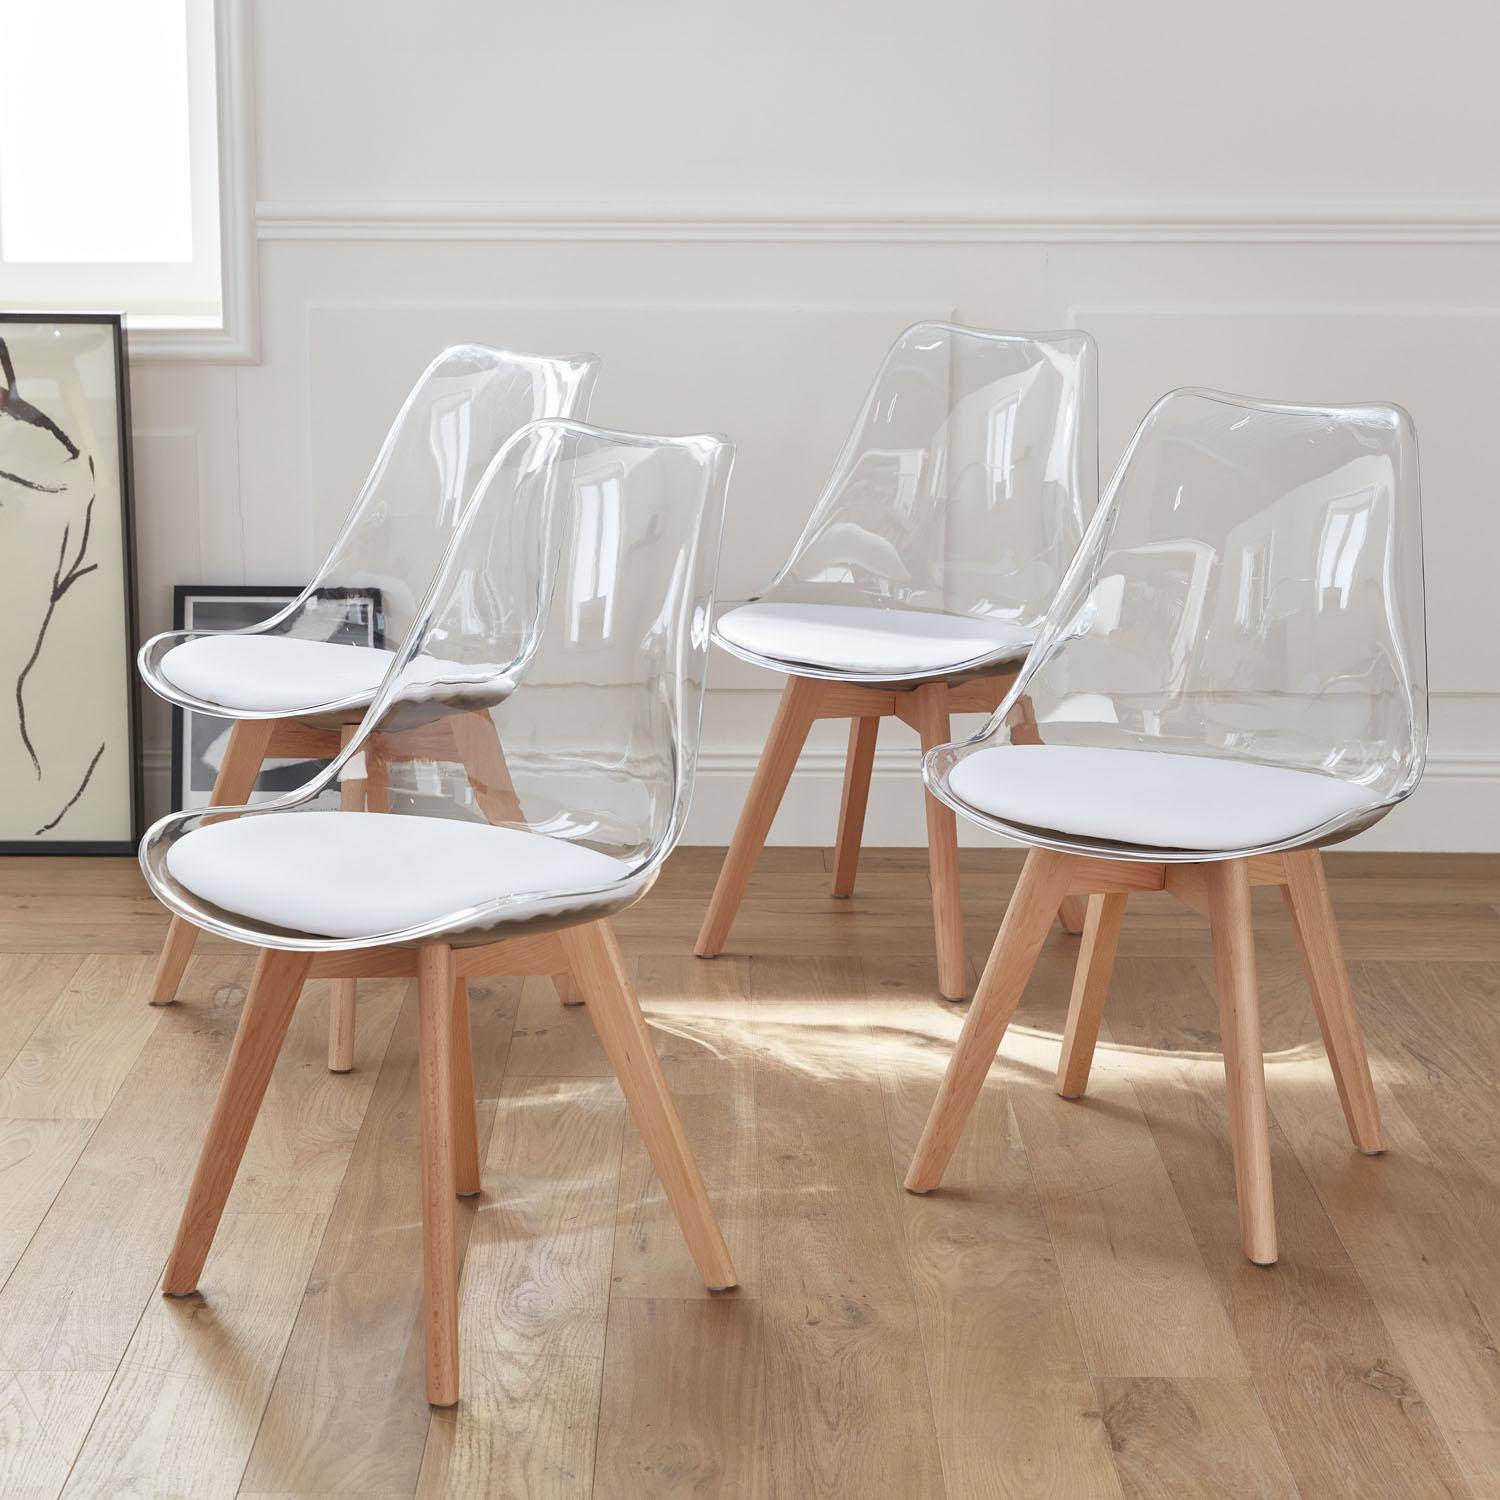 Juego de 4 sillas escandinavas - Lagertha - patas de madera, asientos individuales, cojín blanco, carcasa transparente ,sweeek,Photo2